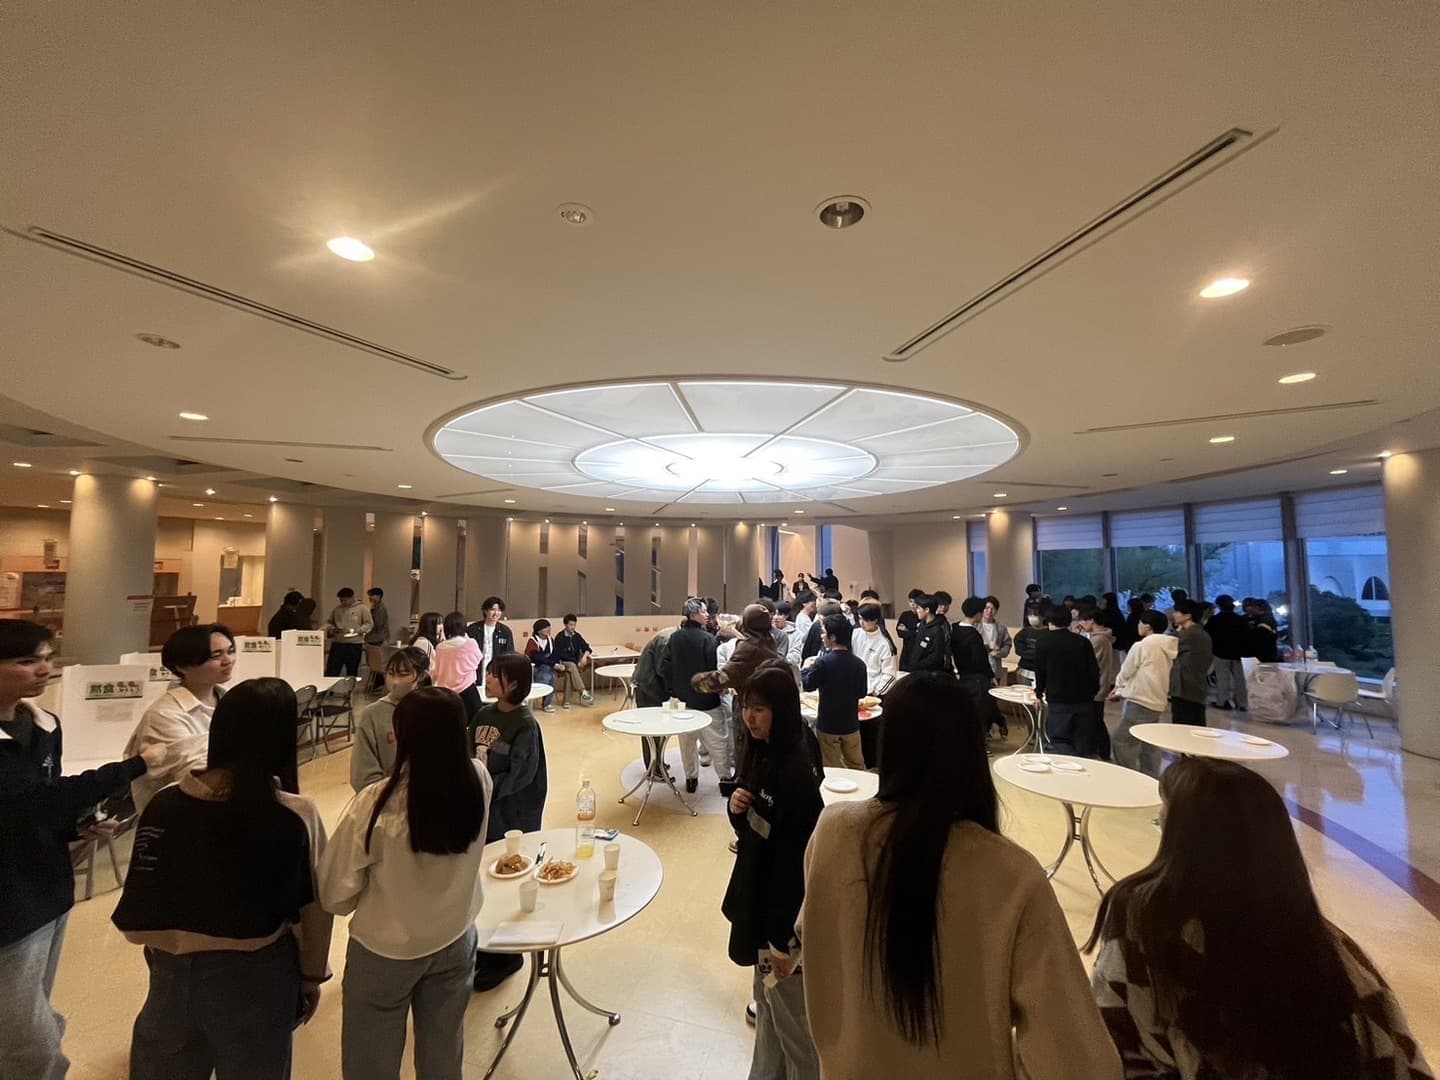 中京大学大学祭豊田実行委員会の新入生歓迎会の様子の写真